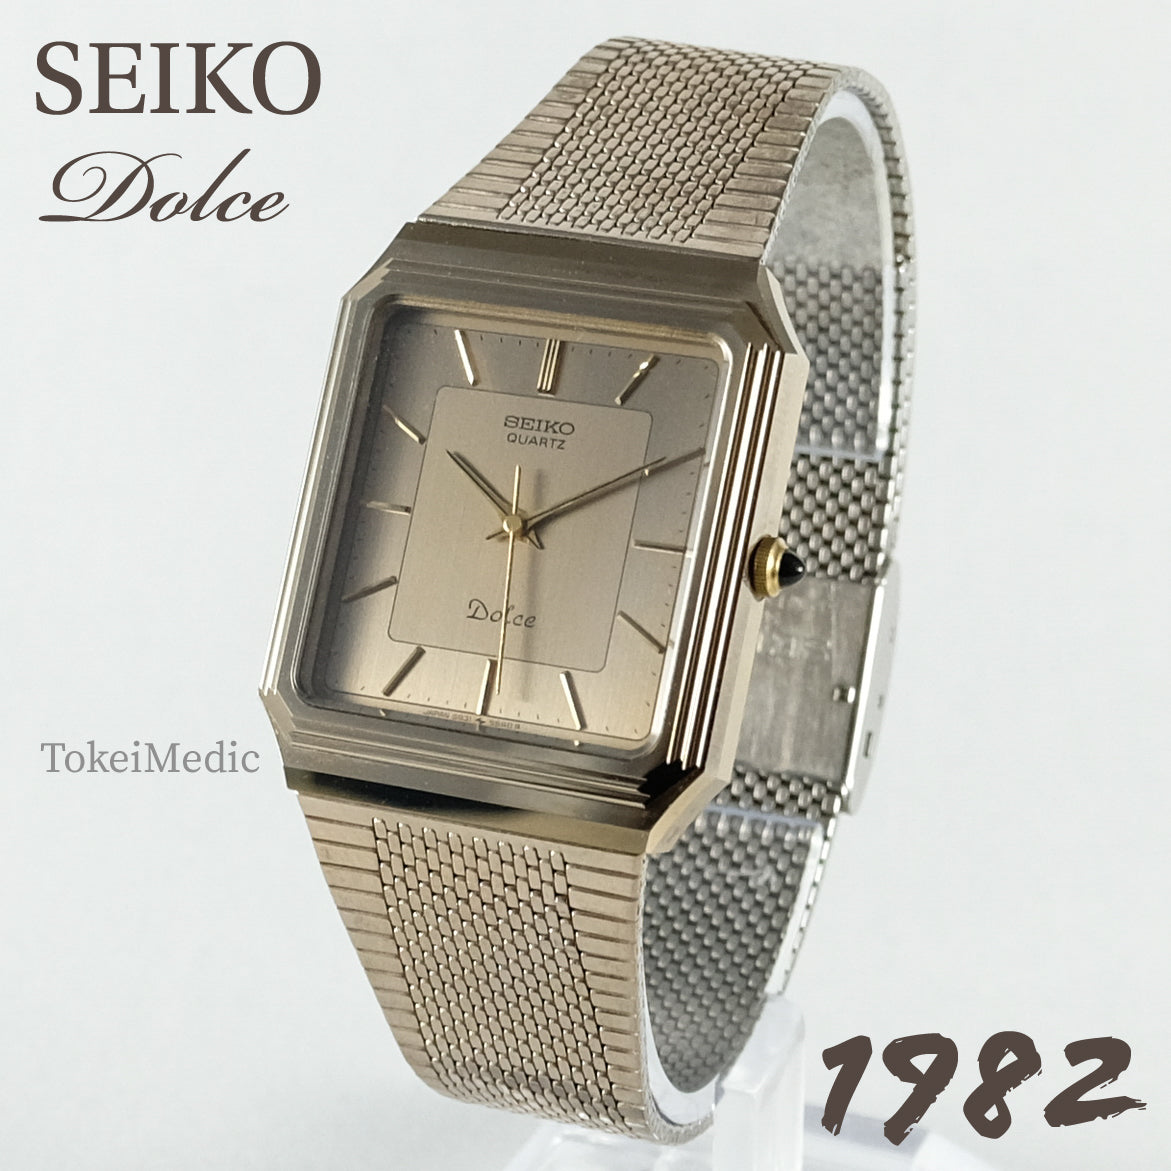 1982 Seiko Dolce 5931-5490